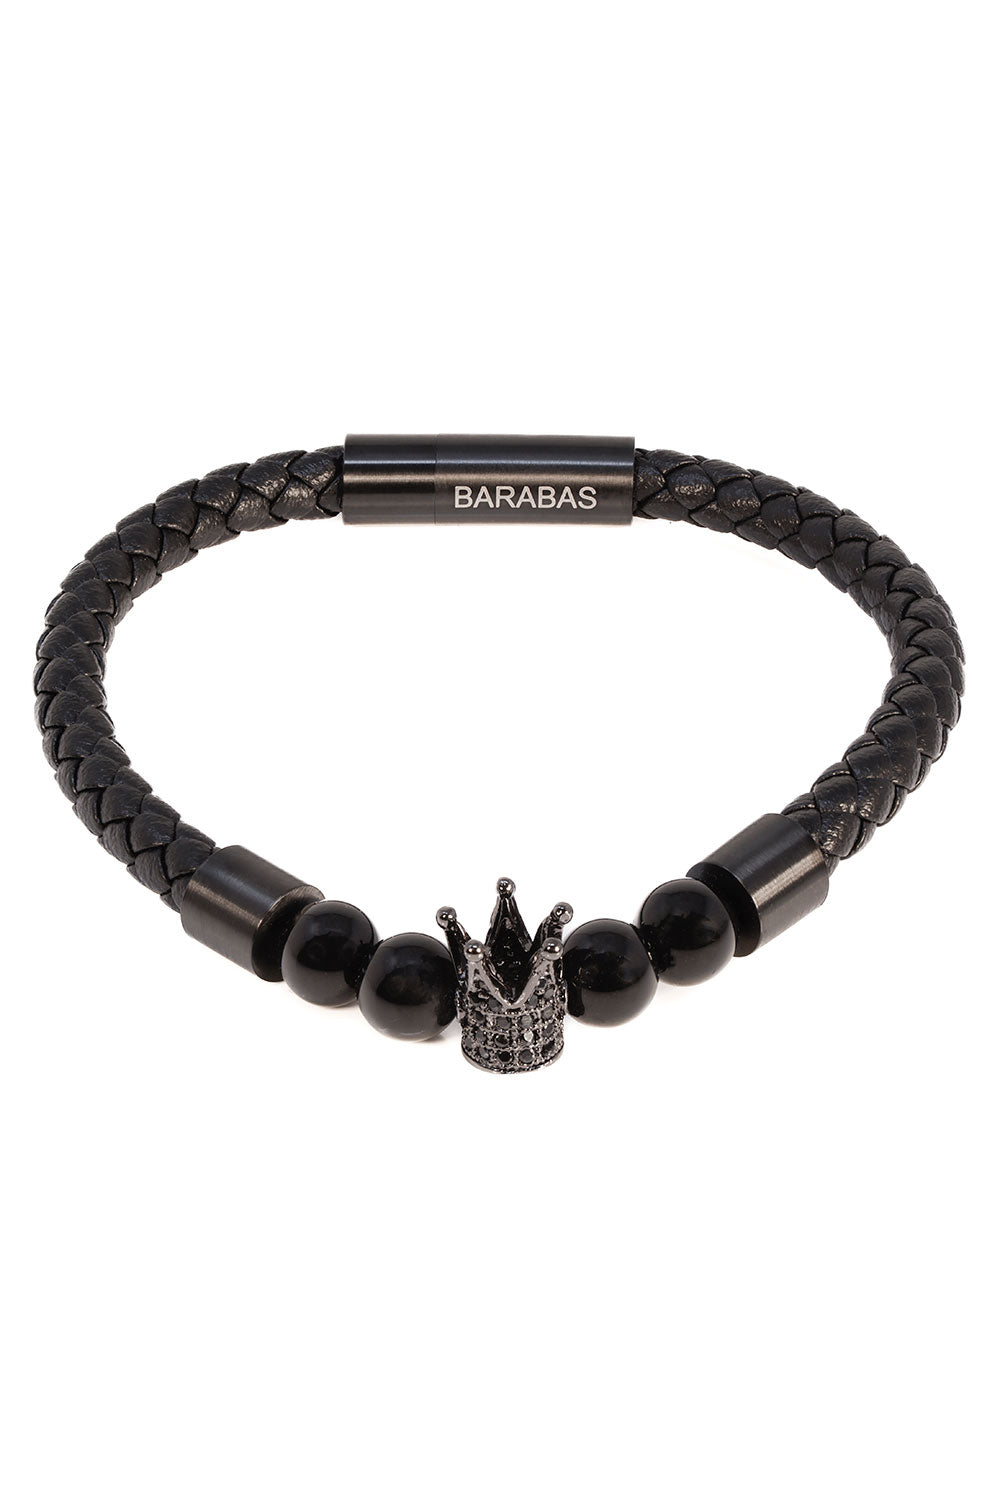 Barabas Unisex Obsidian Crown Leather Magnetic Bangle Bracelets 4BB13 Black